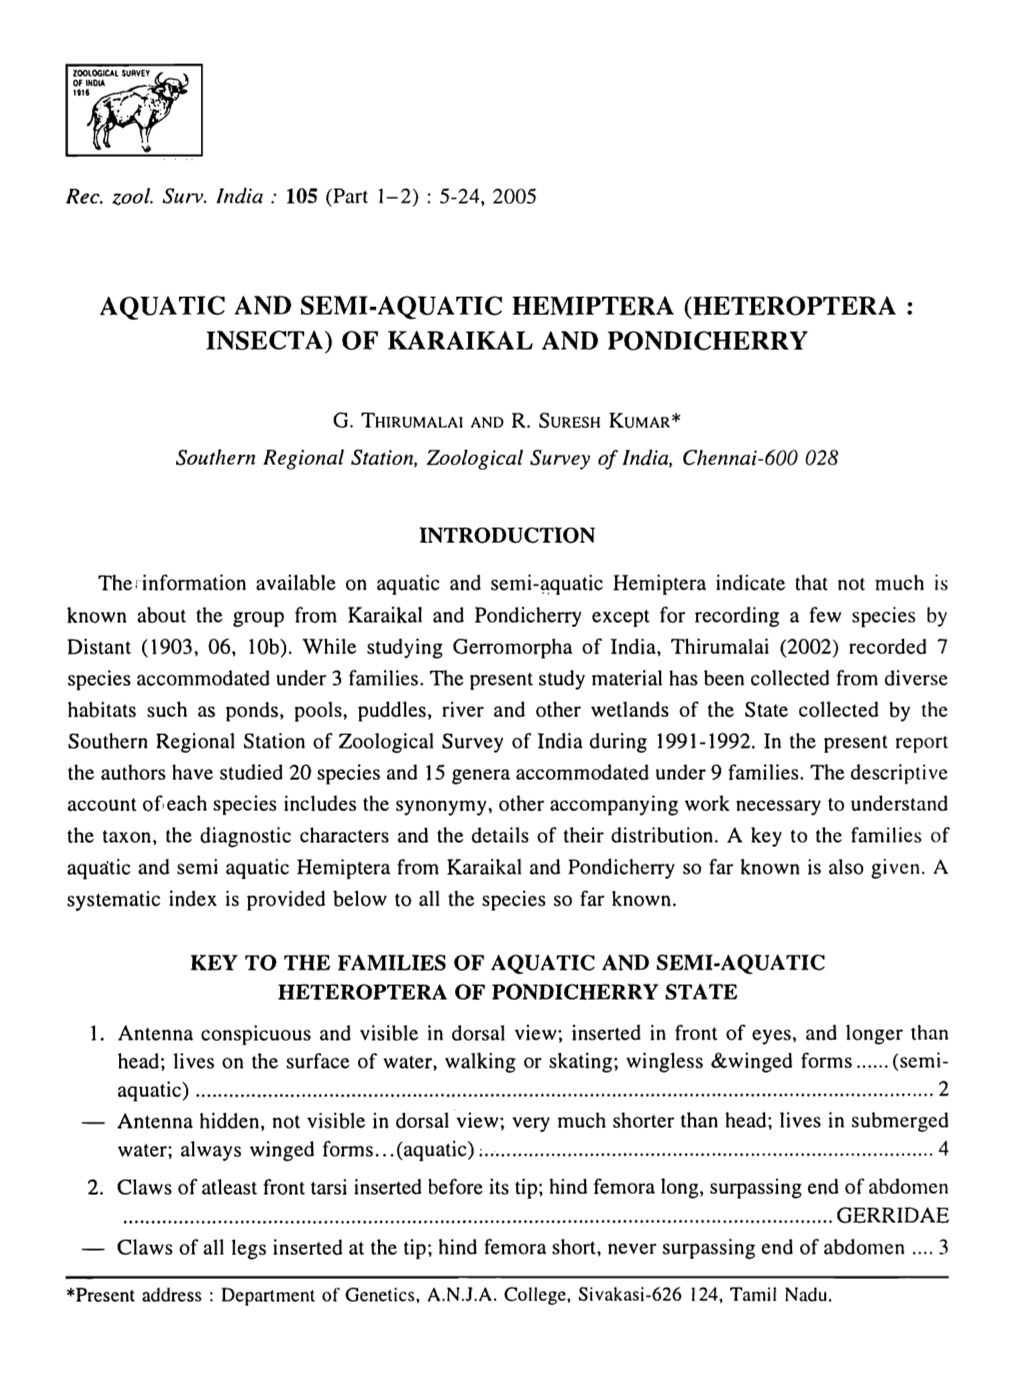 Aquatic and Semi-Aquatic Hemiptera (Heteroptera : Insecta) of Karaikal and Pondicherry